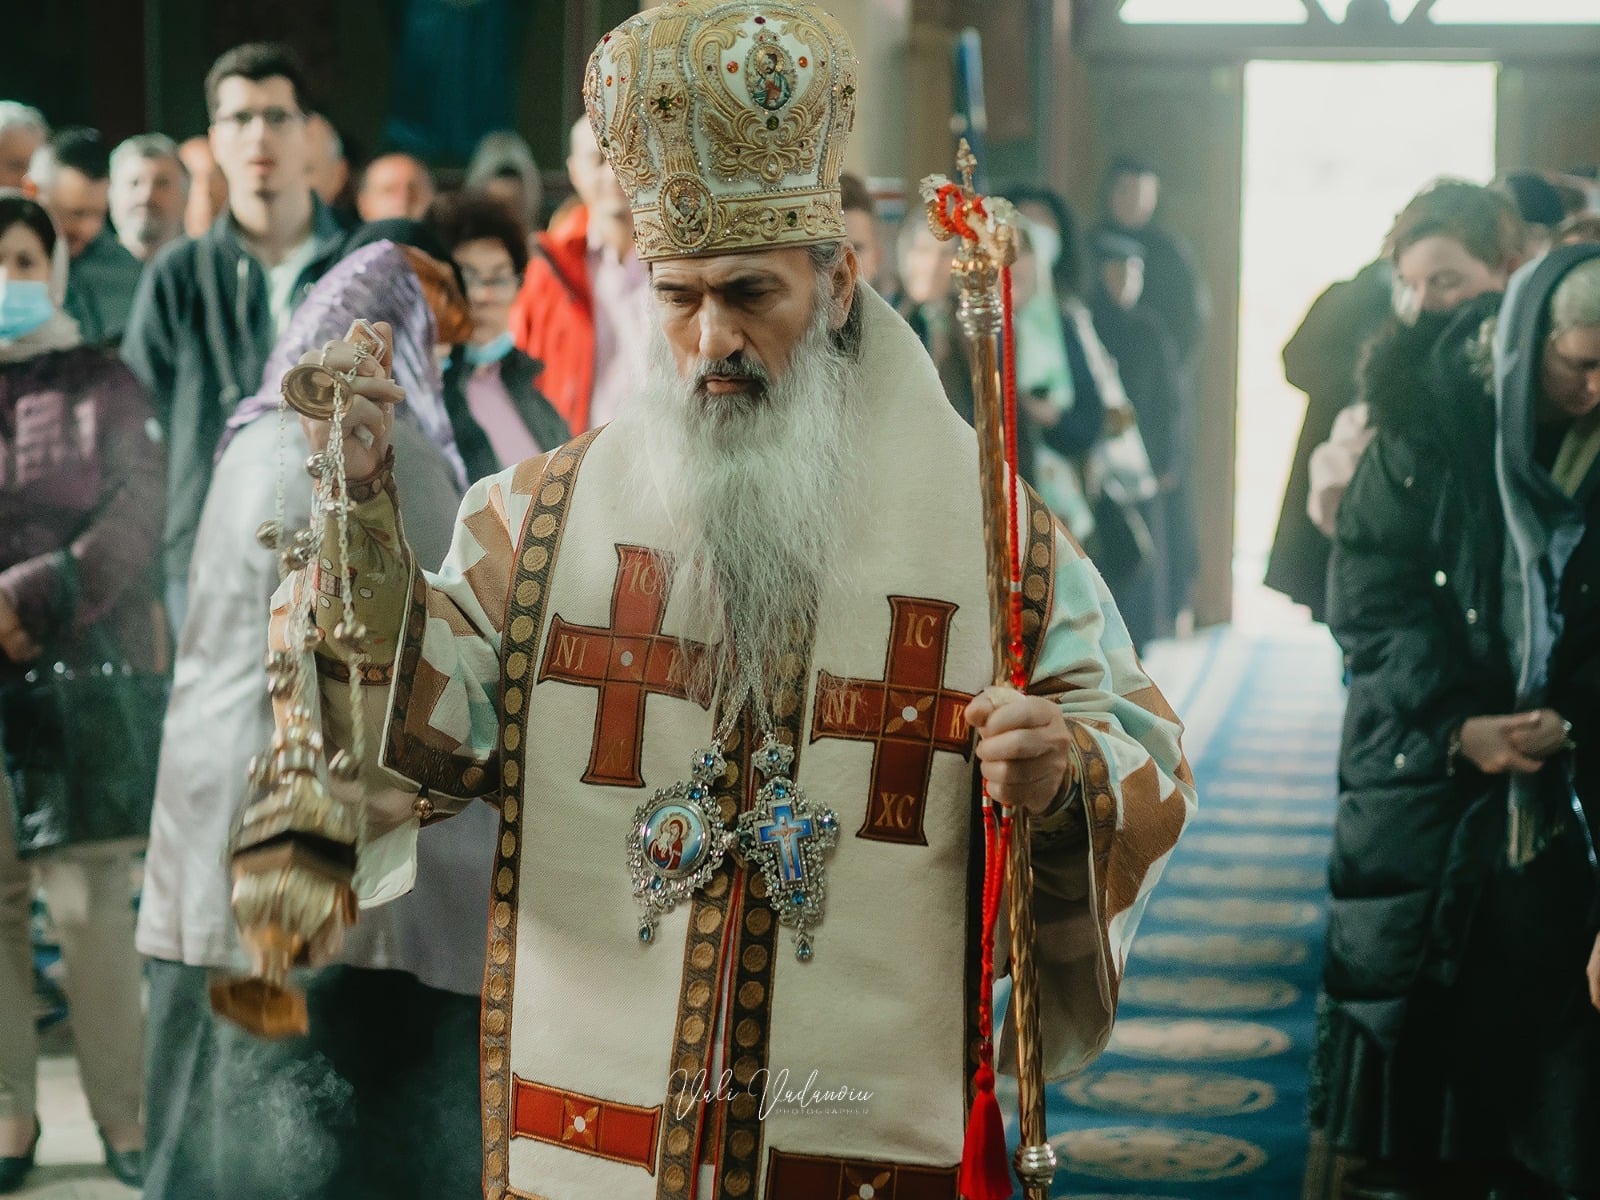 IPS Teodosie, invitație la liturghie pentru Președintele Iohannis și Prim-ministrul Ciucă, cu ocazia sărbătorii naționale de Sf. Andrei: Vom avea priveghere luni seara de la ora 17, iar Liturghia solemnă va fi marți, 30 noiembrie